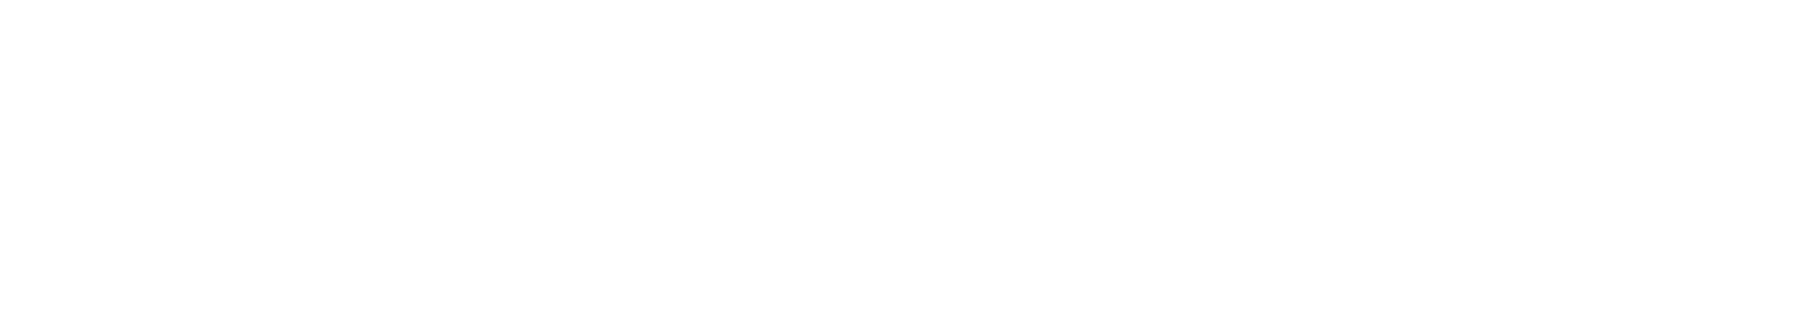 L'Oréal logo large for dark backgrounds (transparent PNG)